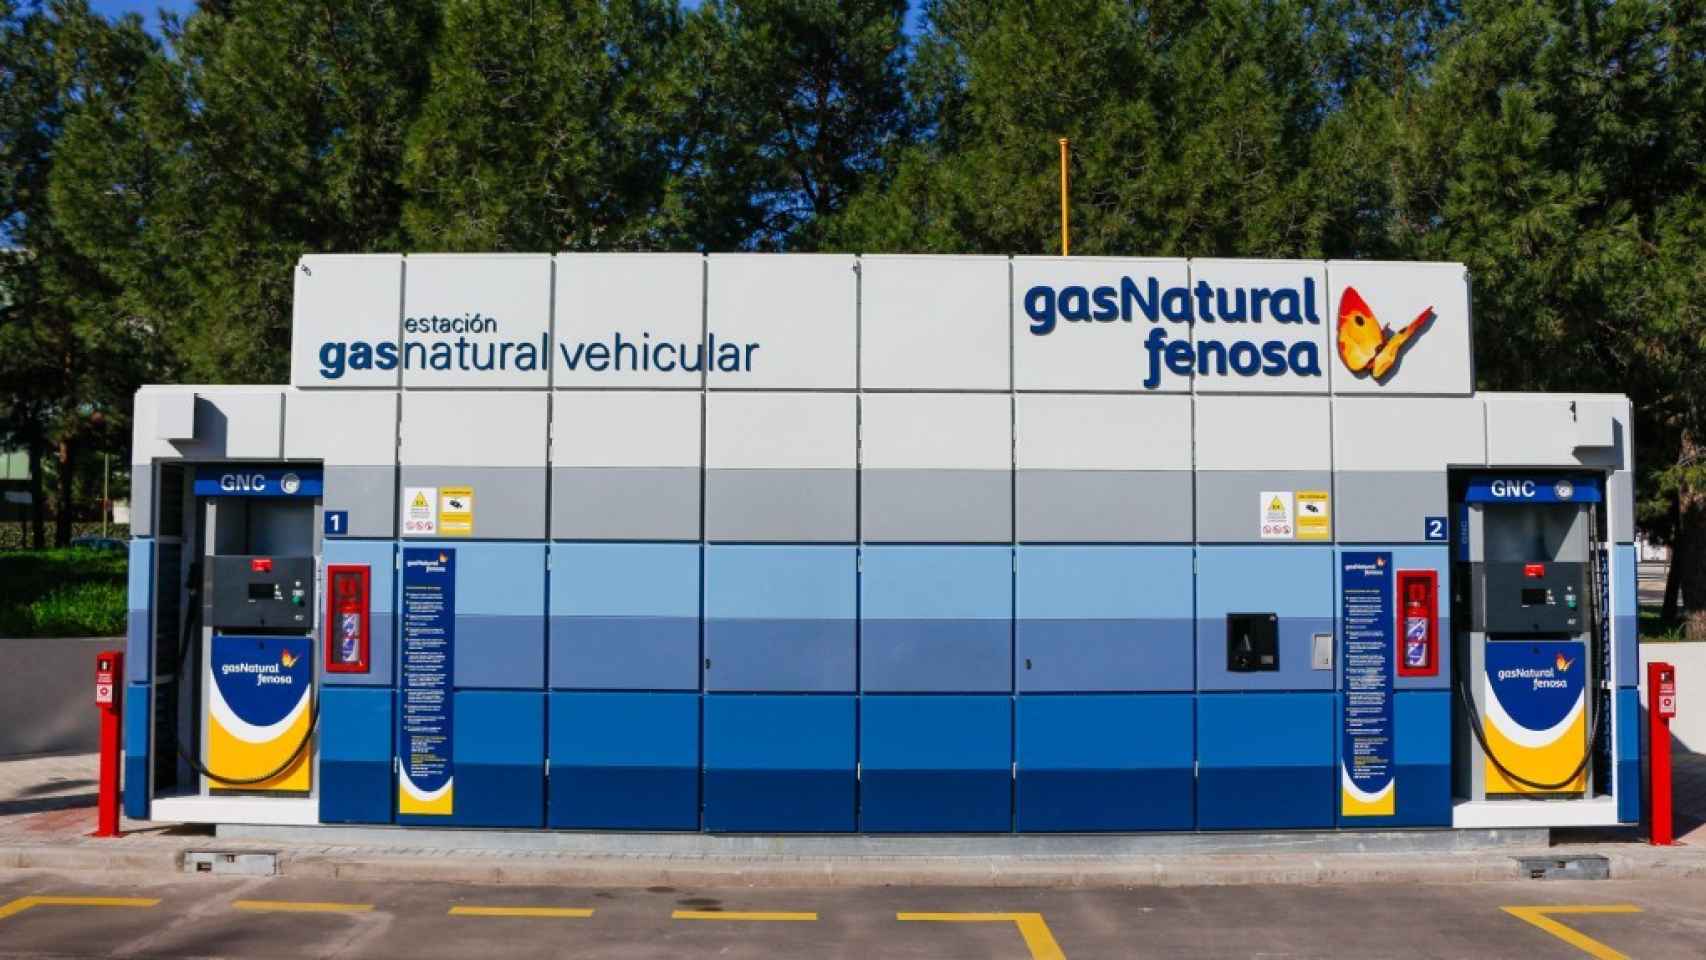 Imagen de una estación de gas natural vehicular.